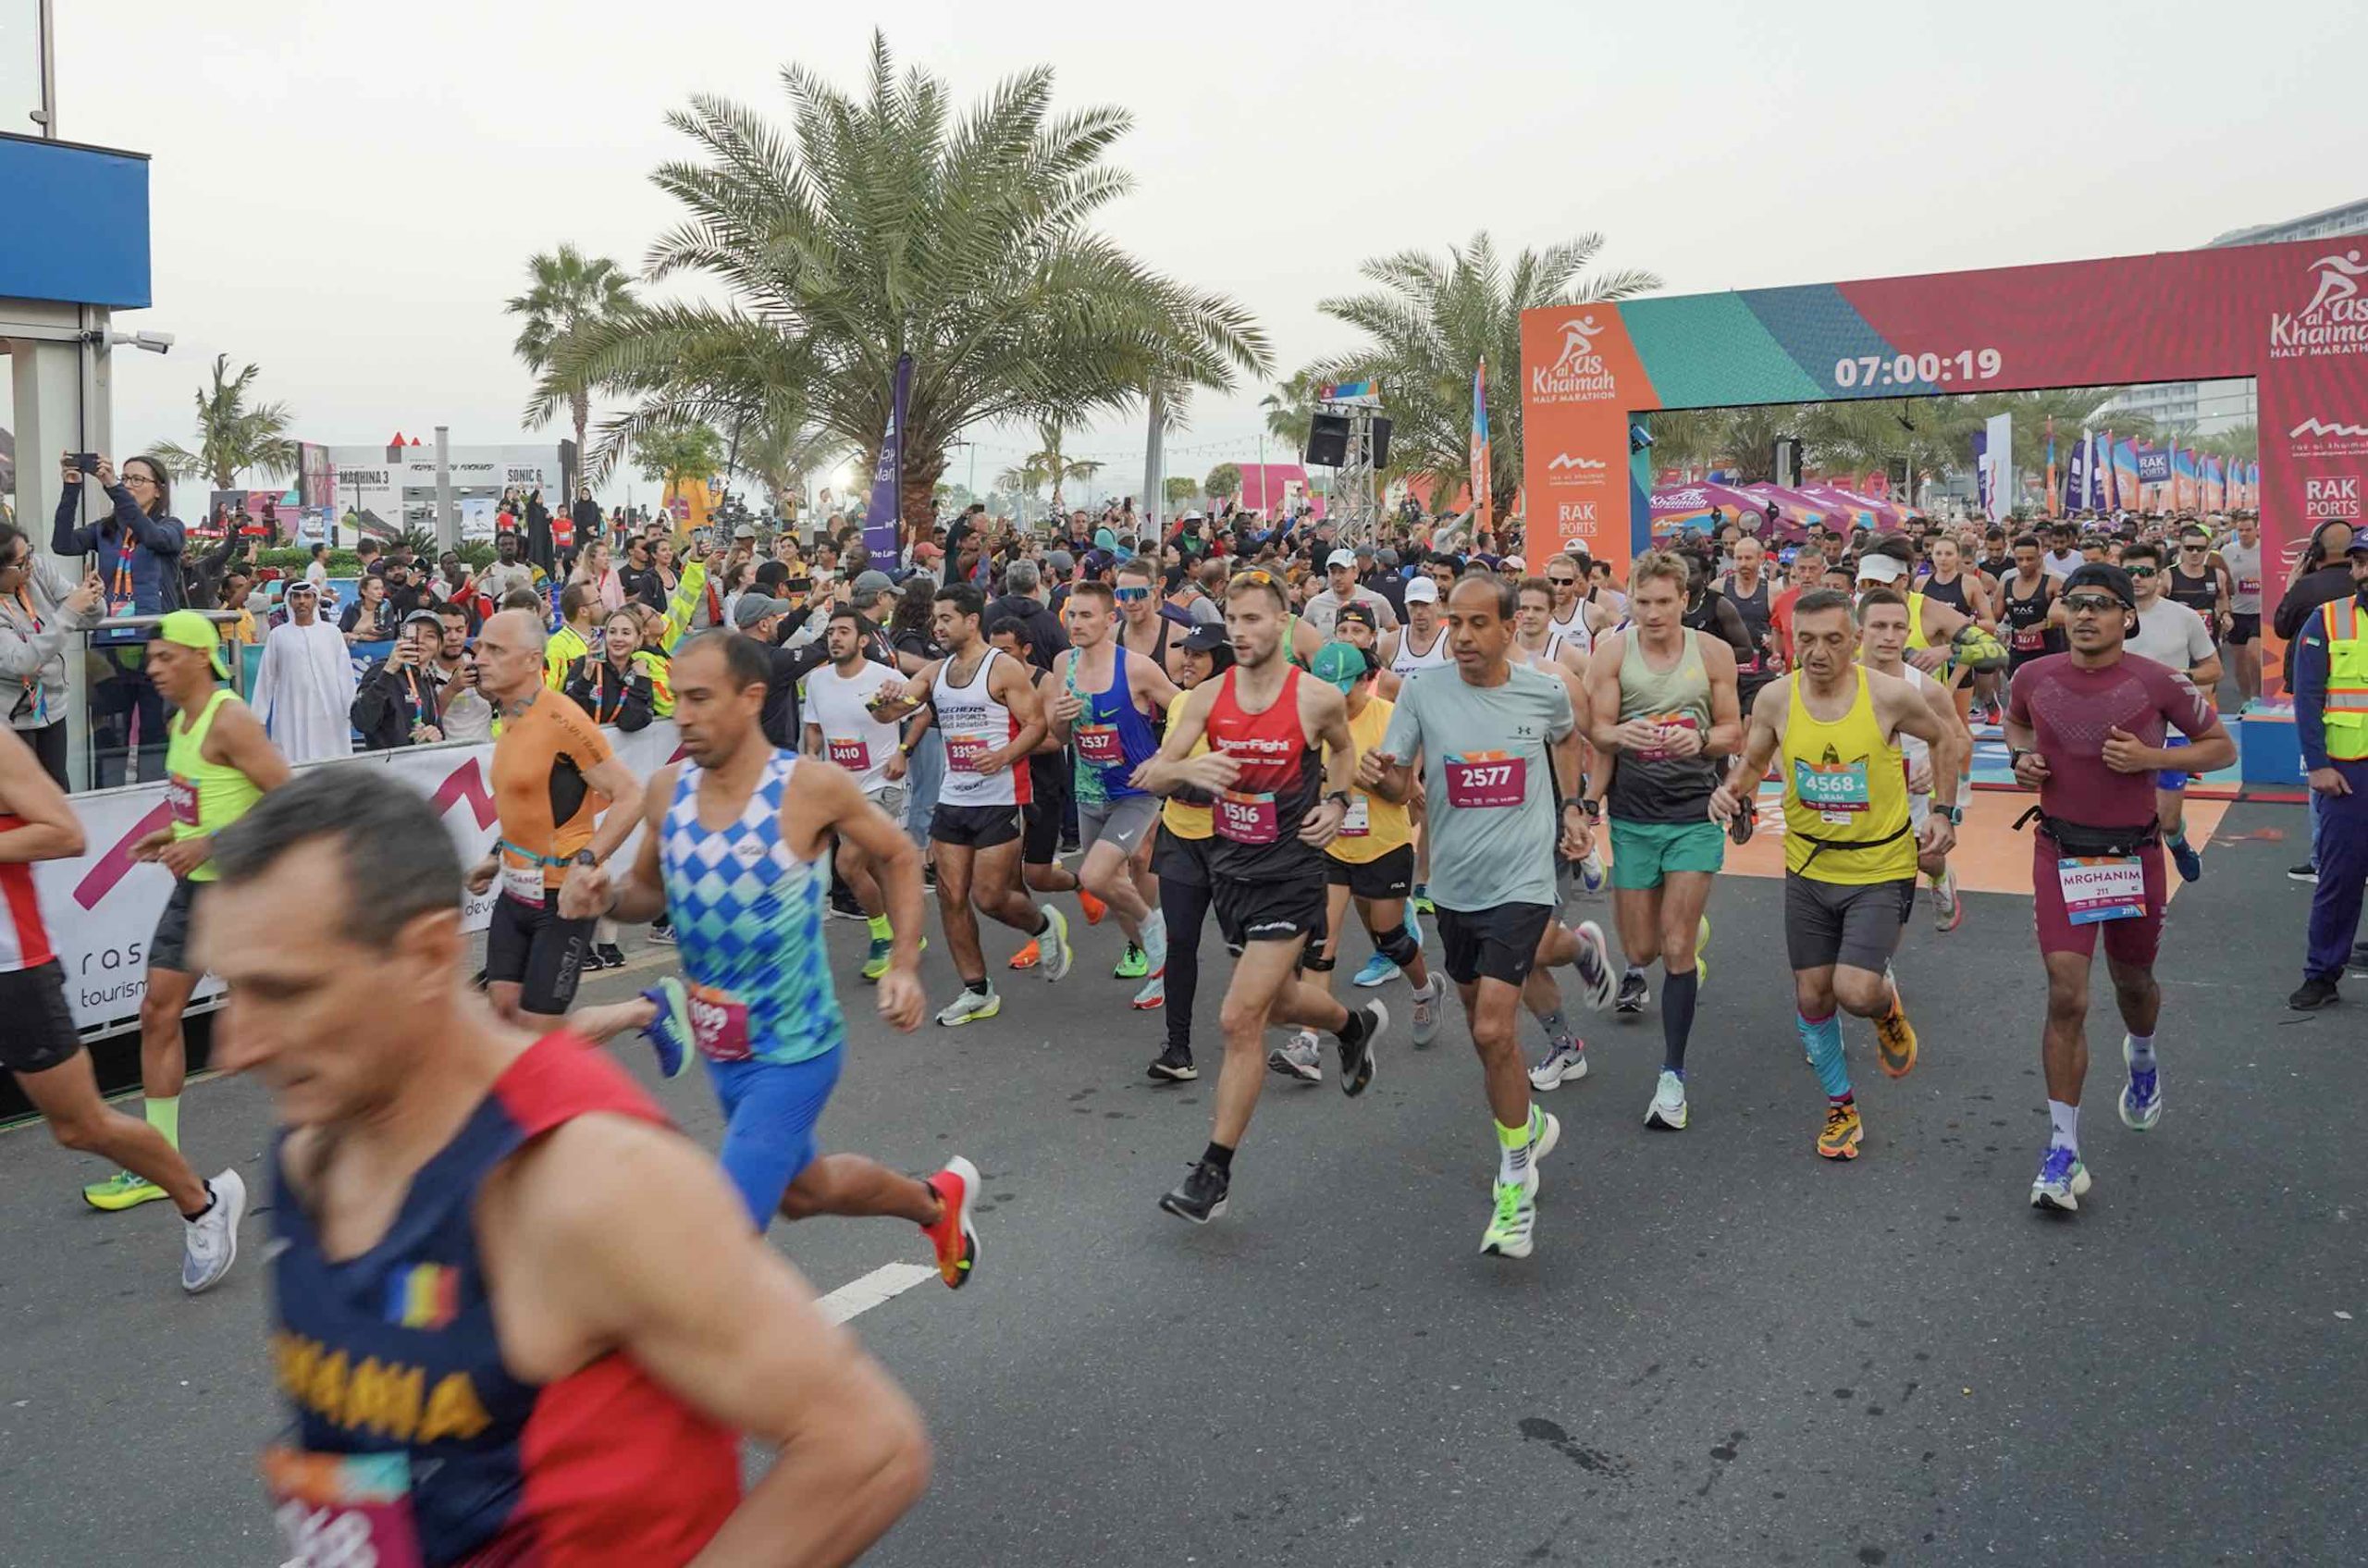 New Routes, New Races for the RAS AL Khaimah Half Marathon event, set